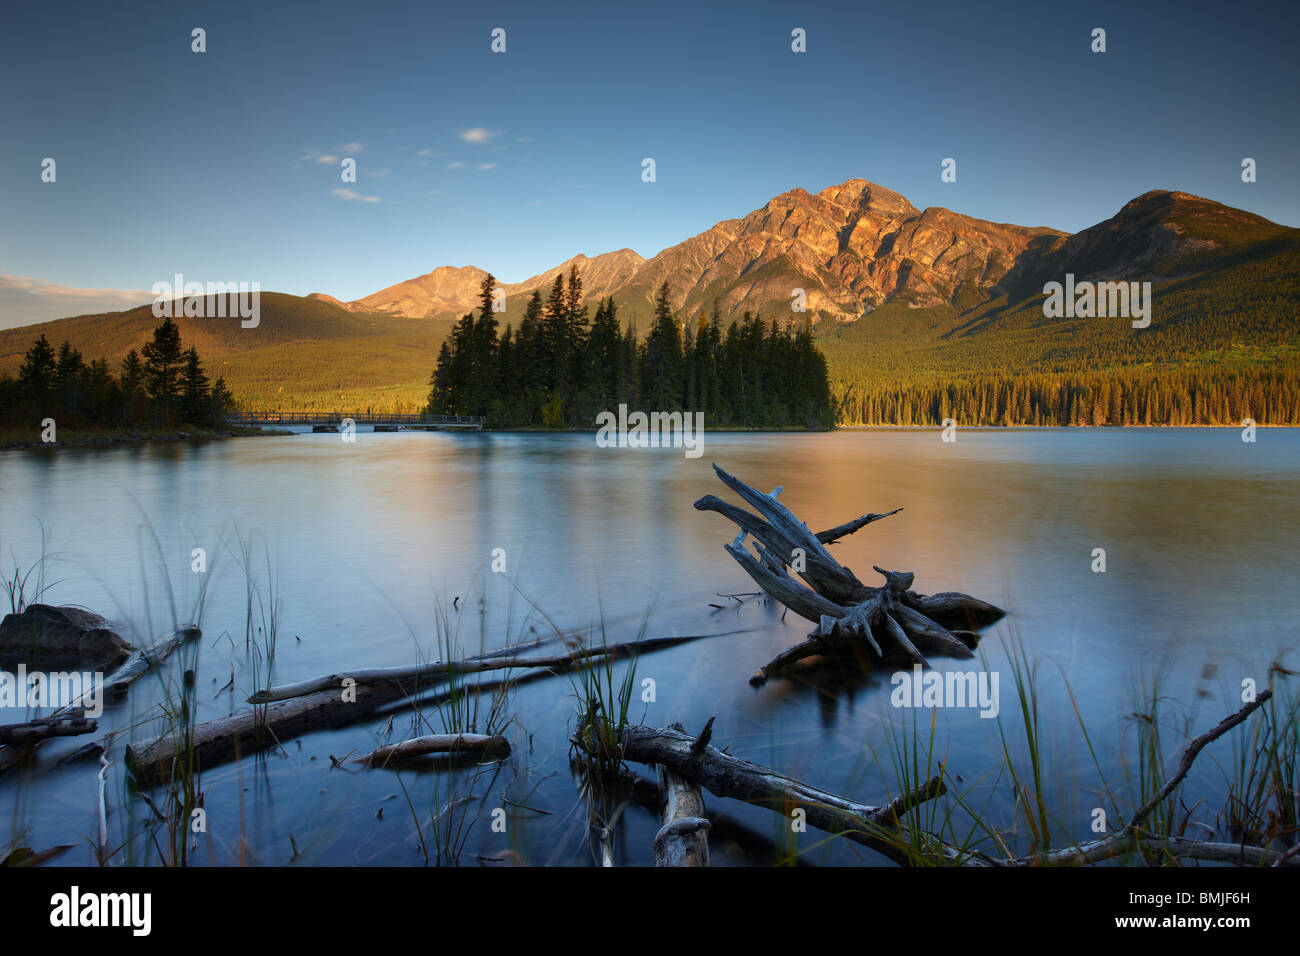 Pyramid Lake and Mountain at dawn, Jasper National Park, Alberta, Canada Stock Photo